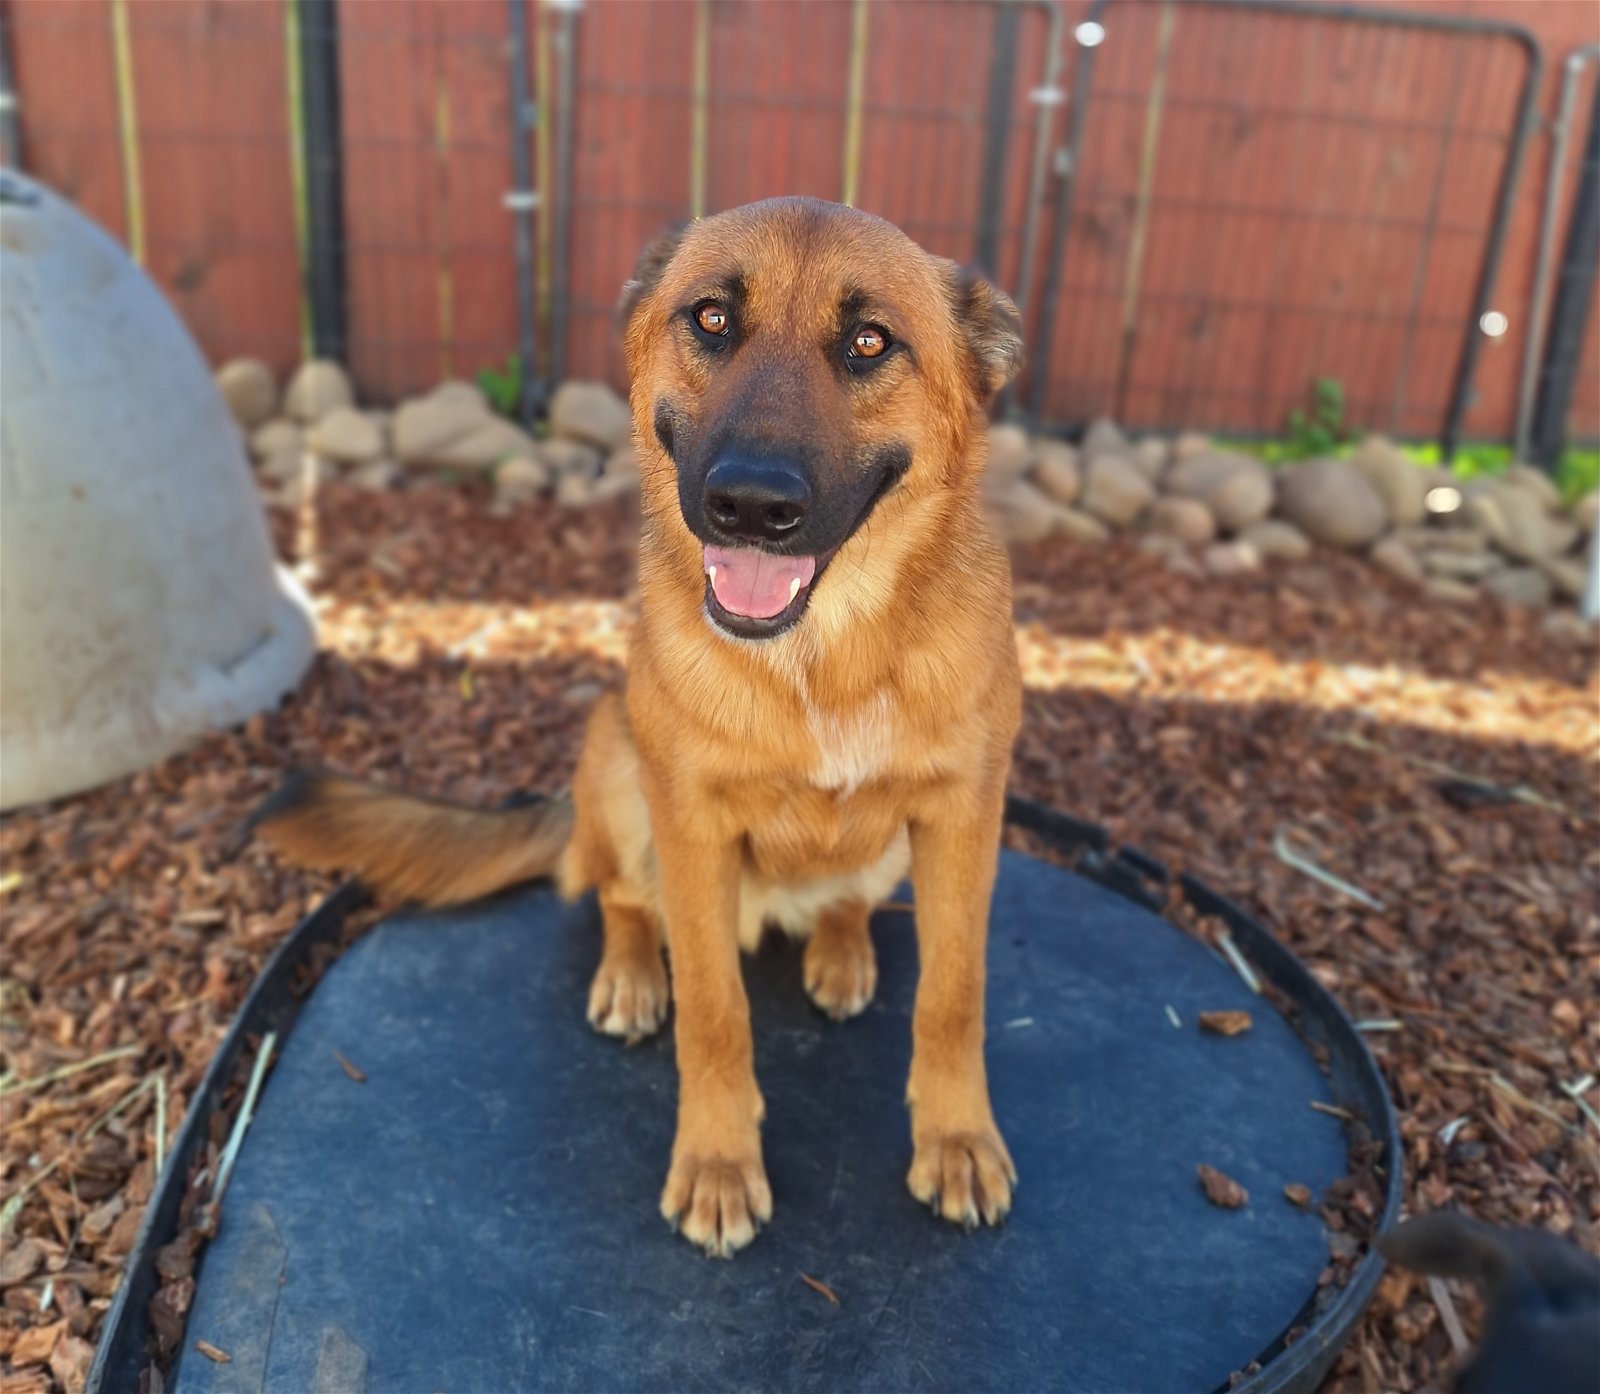 adoptable Dog in Chico, CA named LEONARDO